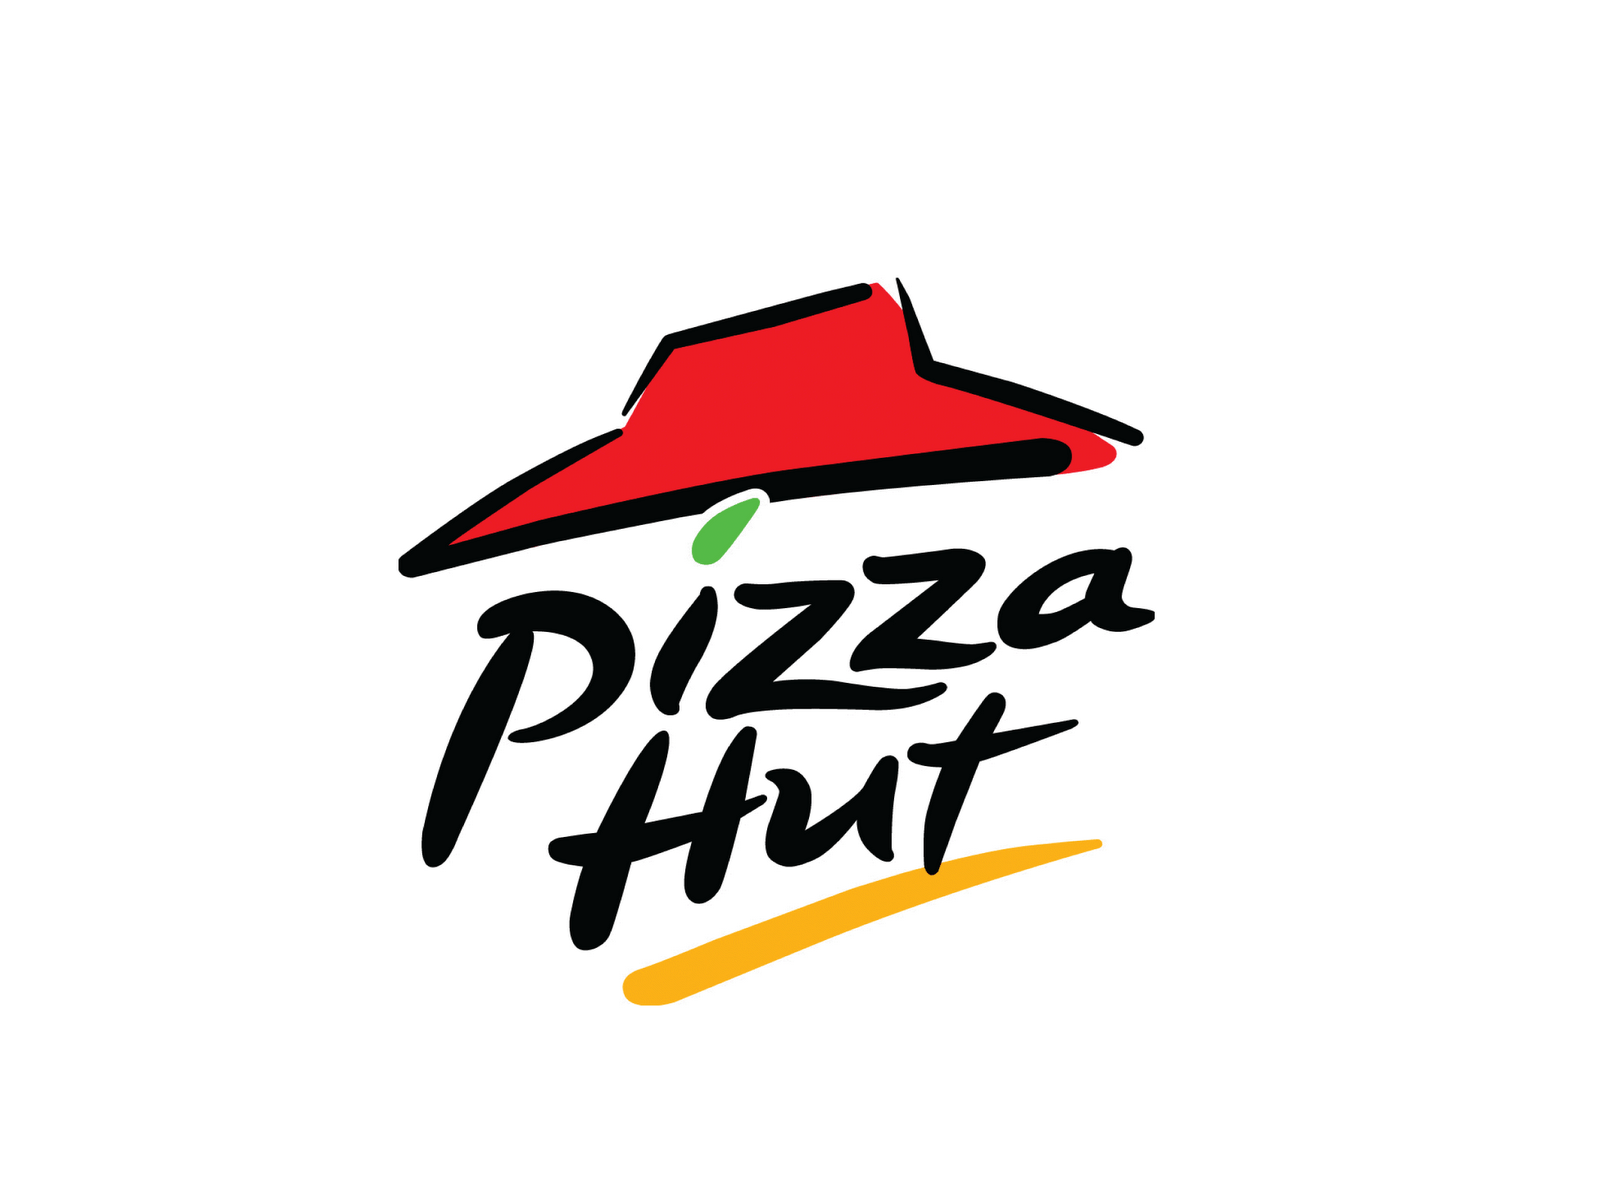 Deliziati Aspetta Da Pizza Hut